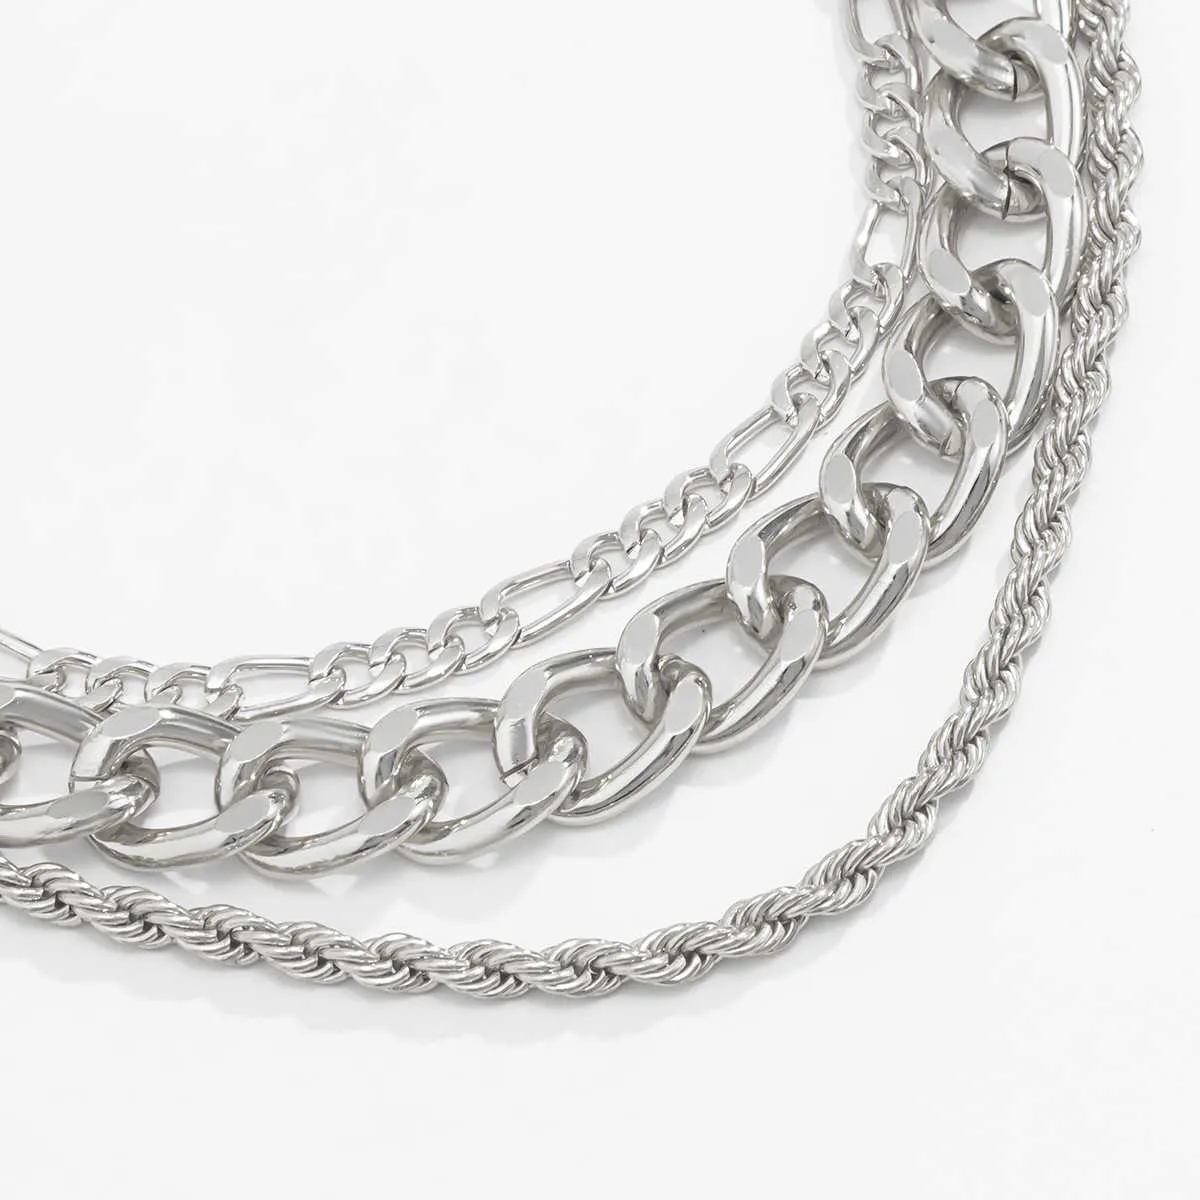 3шт кубинская цепная цепочка цепь цепи ожерелье золотое серебро цвет колье для женщин девочек ювелирные изделия Q0809